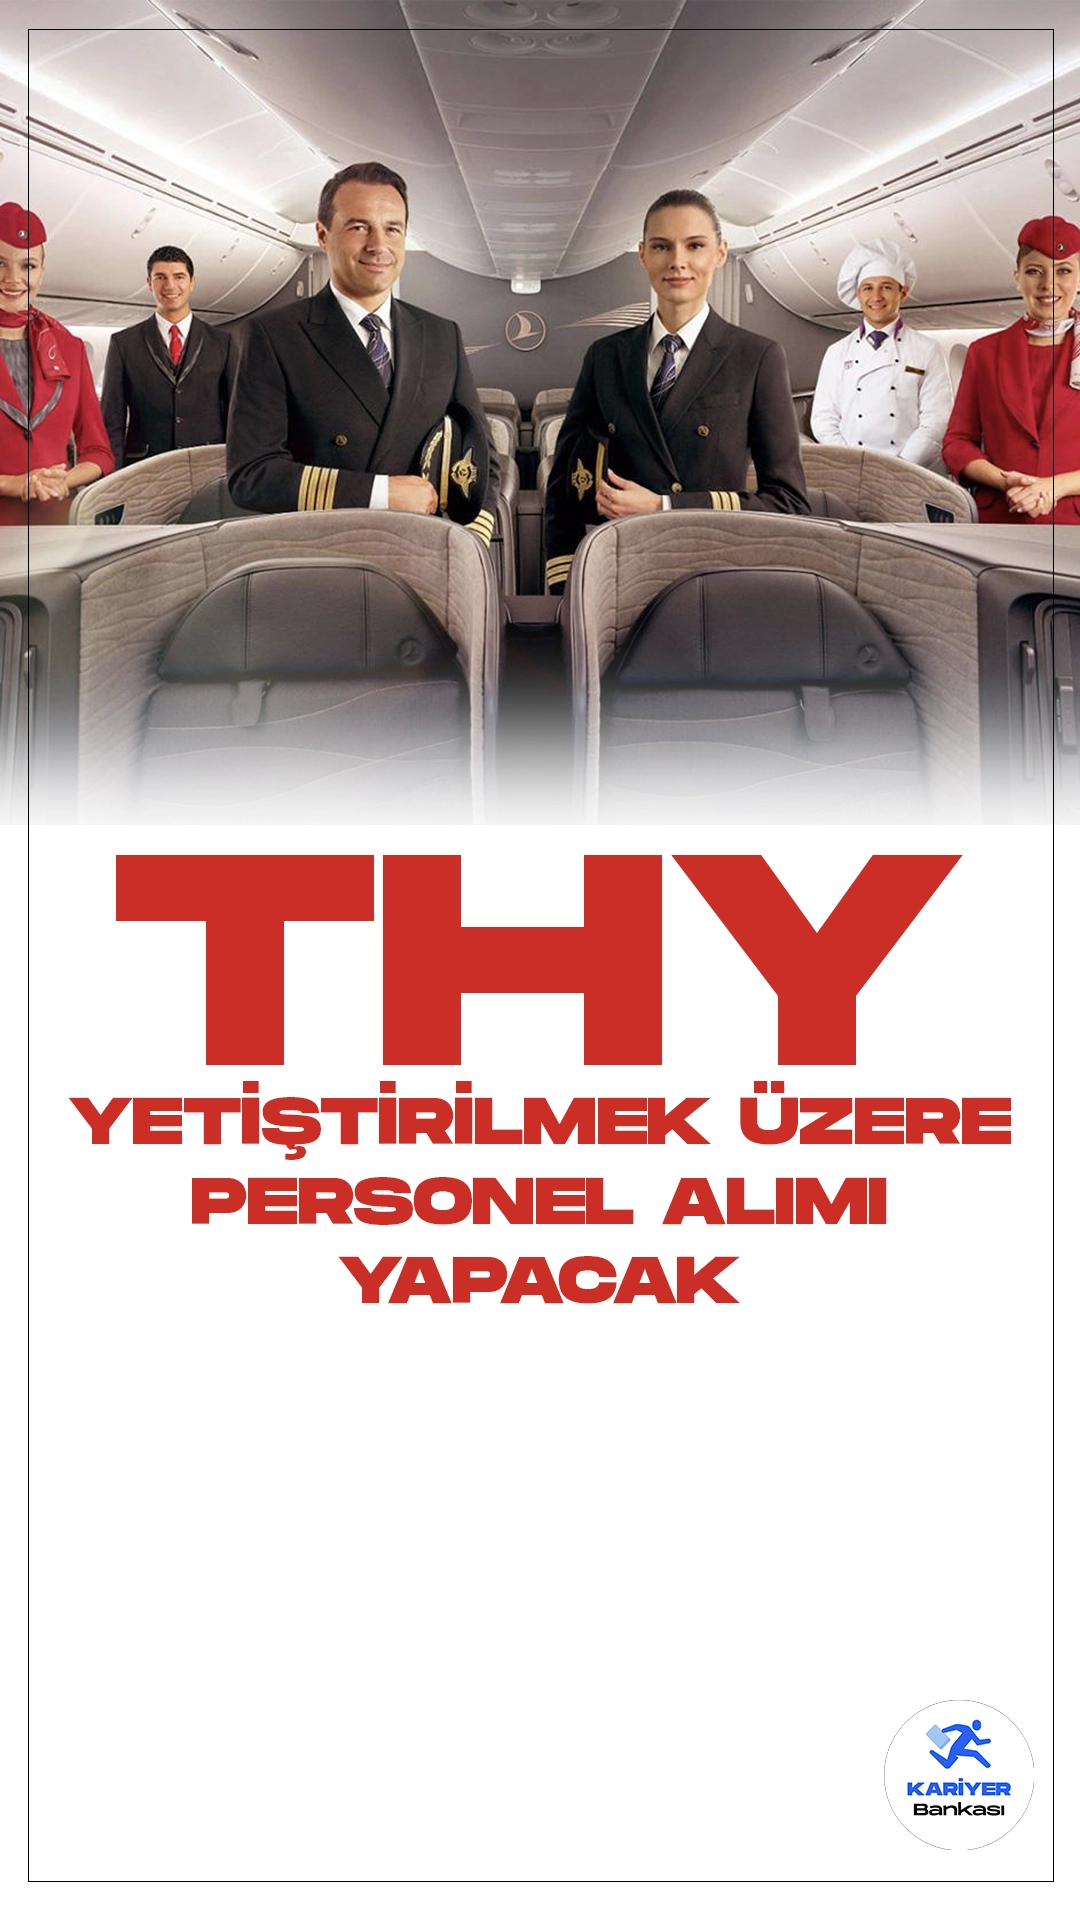 Türk Hava Yolları (THY) Yetiştirilmek Üzere 2. Pilot Aday Adayı Alacak. THY kariyer sayfasından yetiştirilmek üzere yeni personel alımı duyurusu yayımlandı. Yayımlanan duyuruda aşağıdaki ifadeler yer aldı.